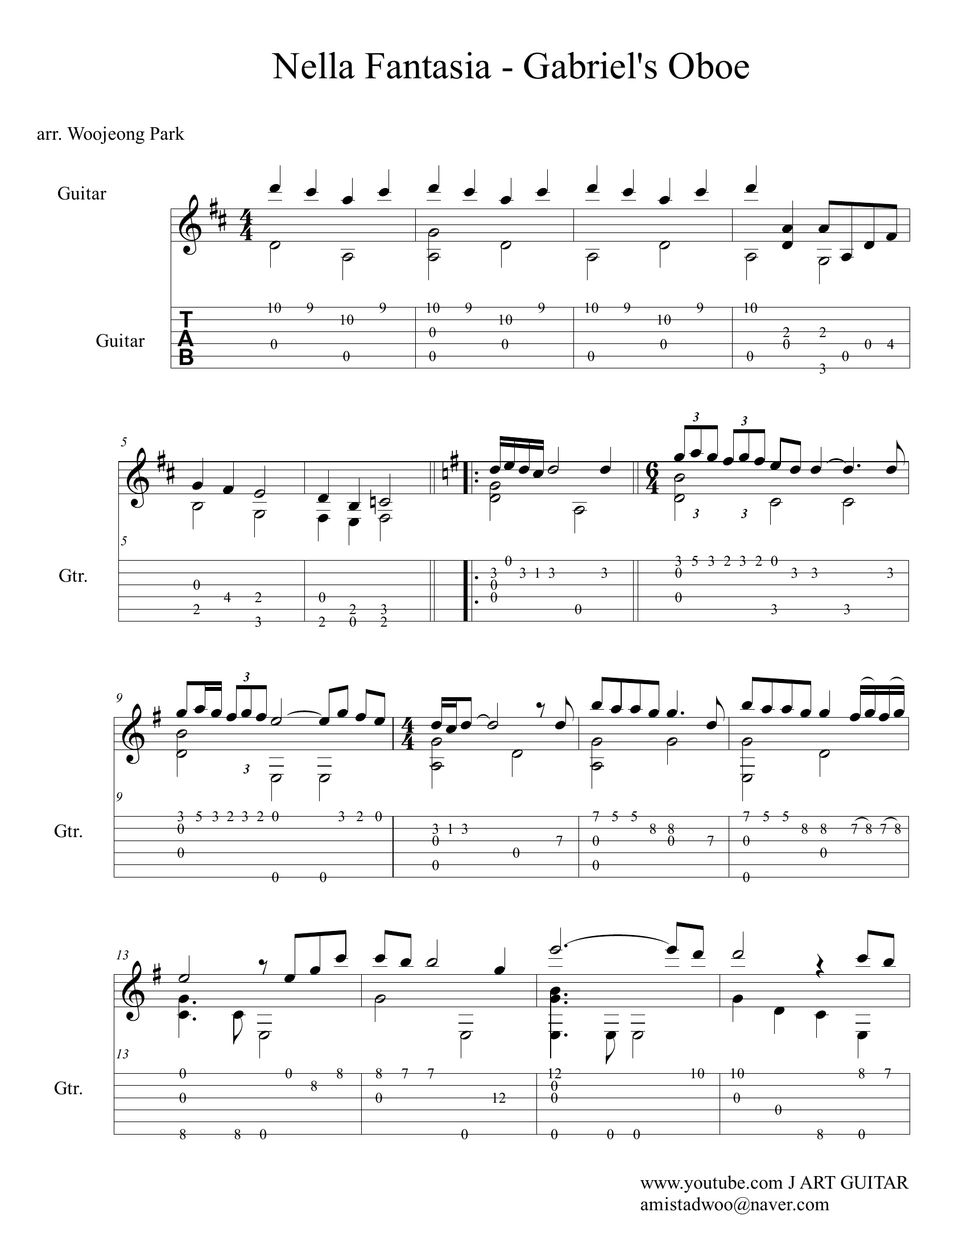 Gabriel'S Oboe - Nella Fantasia - Gabriel'S Oboe - Nella Fantasia  ('Mission' Ost-Ennio Morricone) (Guitar Tab) Tab + 1Staff By Woojeong Park